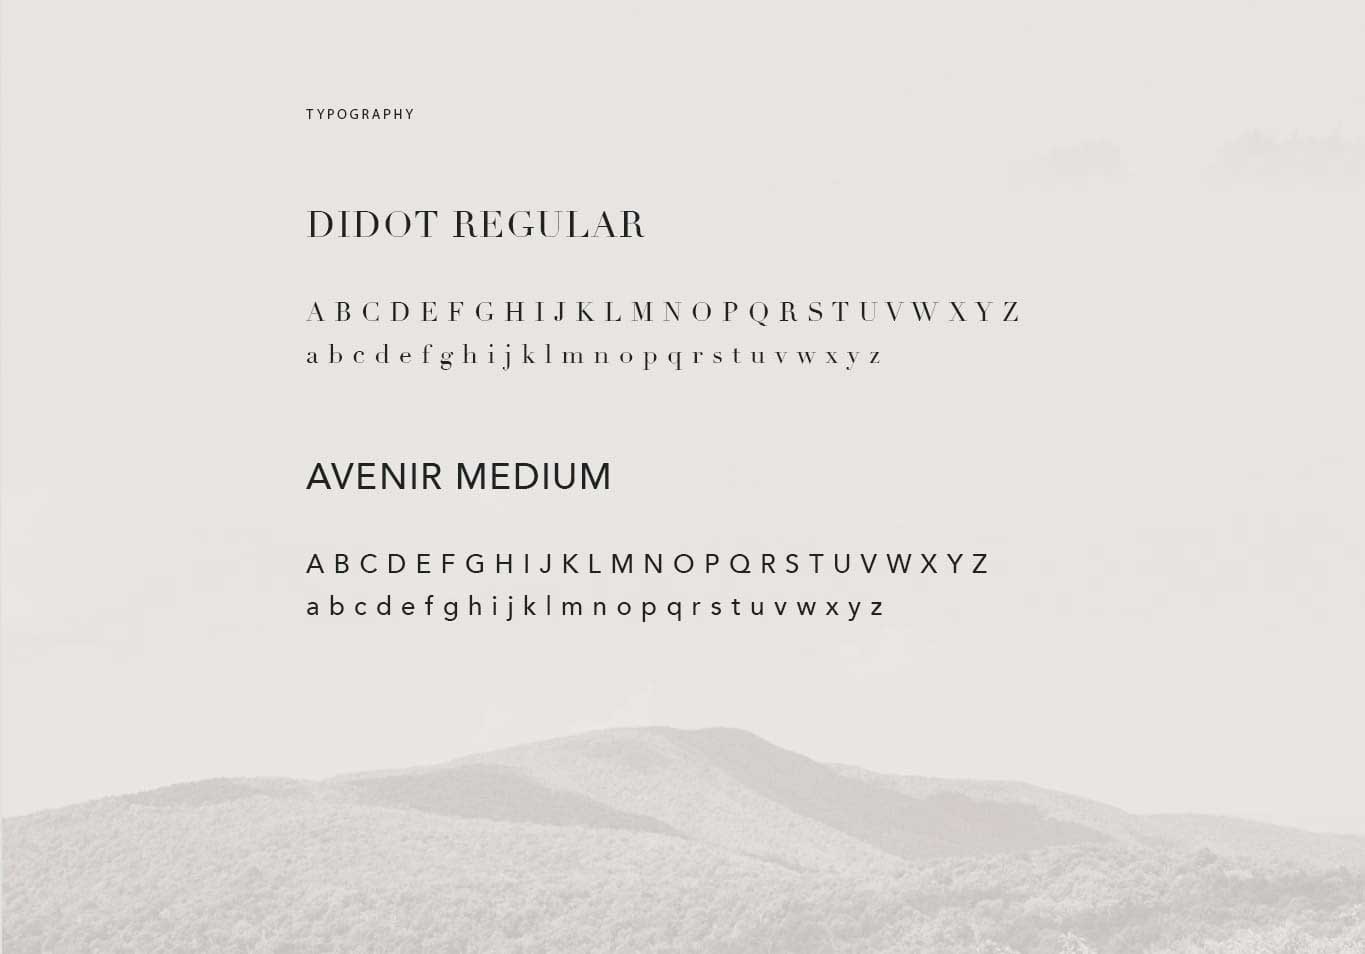 Vertis Typography Concept